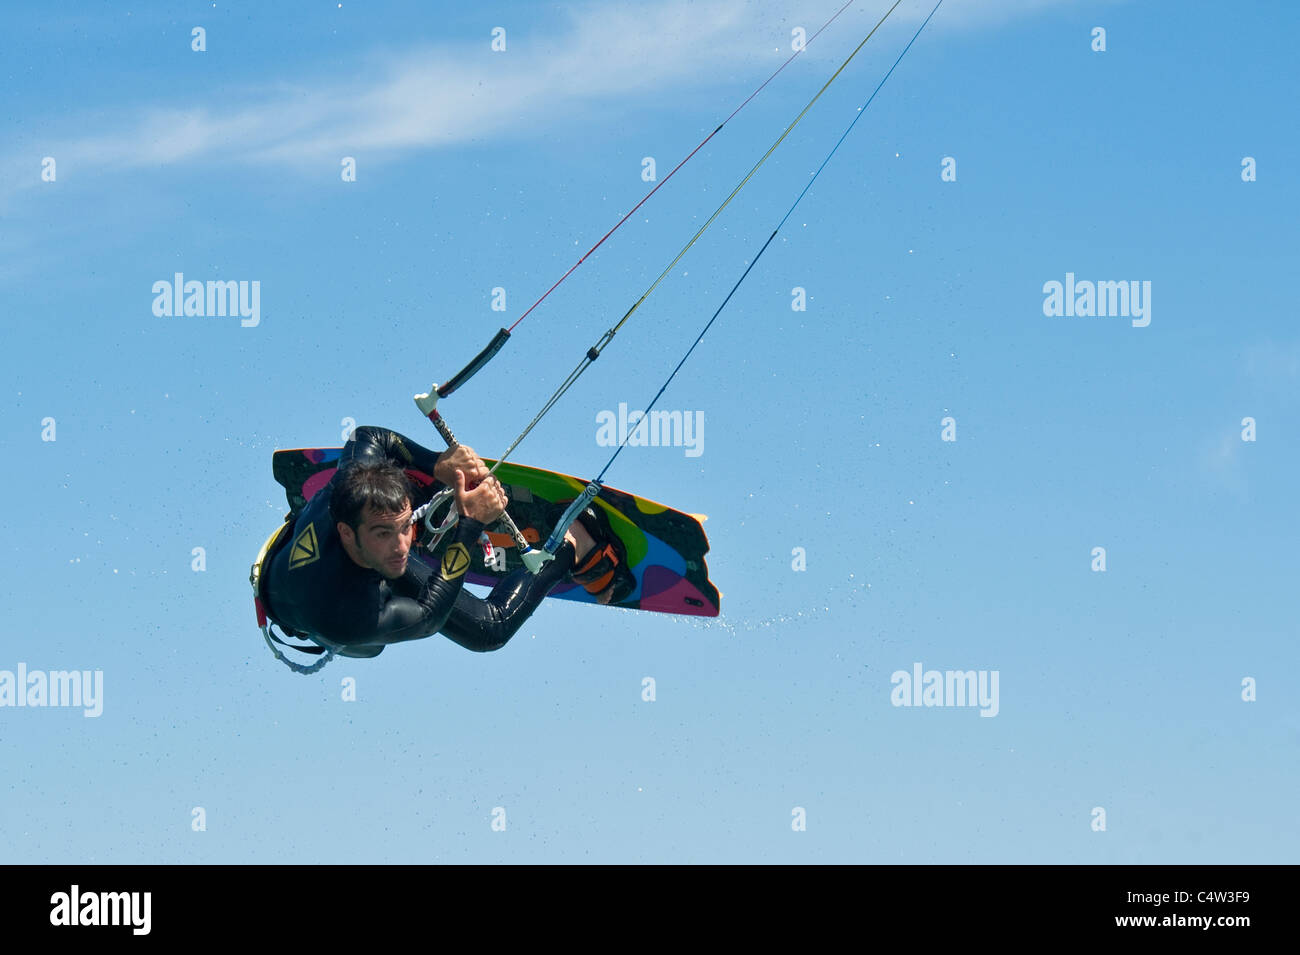 Une vue en gros plan d'un kite surfer au milieu d'un saut à la station d'Eilat en Israël. Banque D'Images